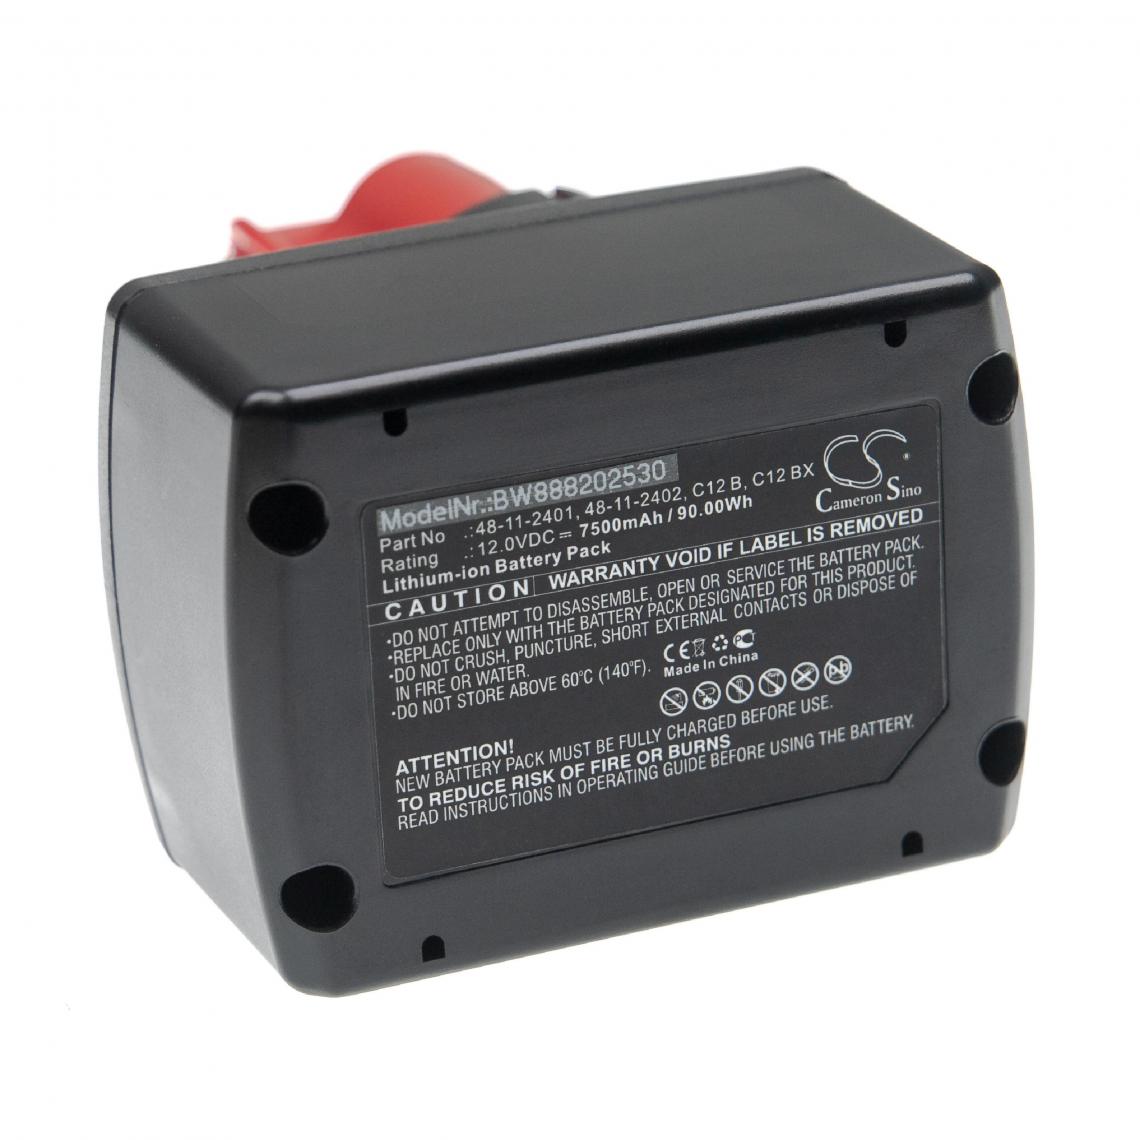 Vhbw - vhbw Batterie remplacement pour Milwaukee 48112401, 48-11-2401, 48-11-2402, 48112411, 48-11-2411 pour outil électrique (7500mAh Li-ion 12 V) - Clouterie